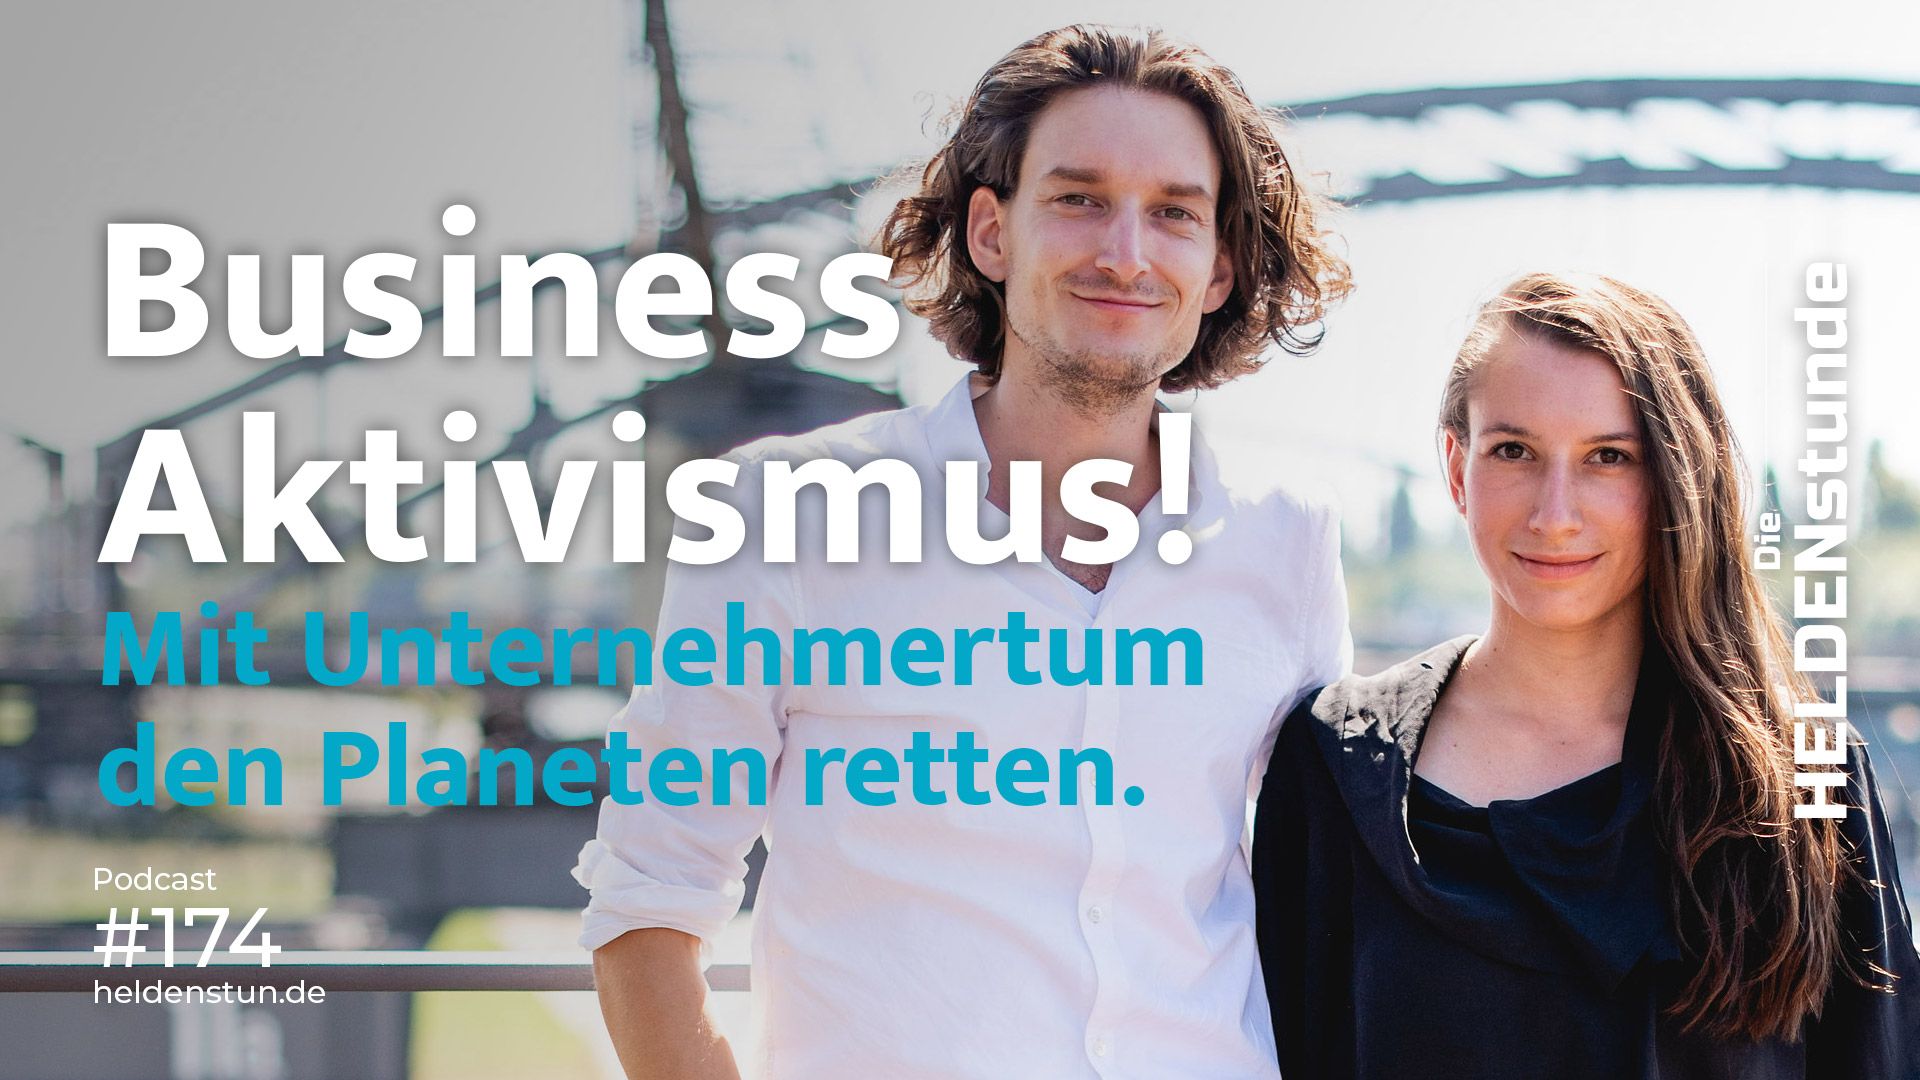 HS 174 | Business Aktivismus! Mit Unternehmertum den Planeten retten – mit Jule und Lukas Bosch